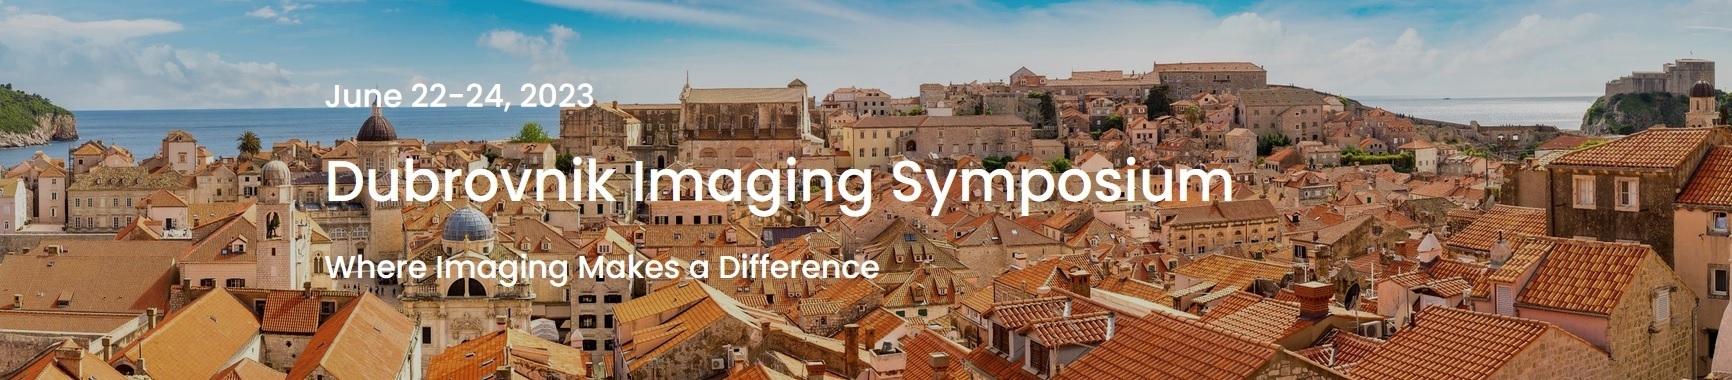 Dubrovnik Imaging Symposium 2023 Update